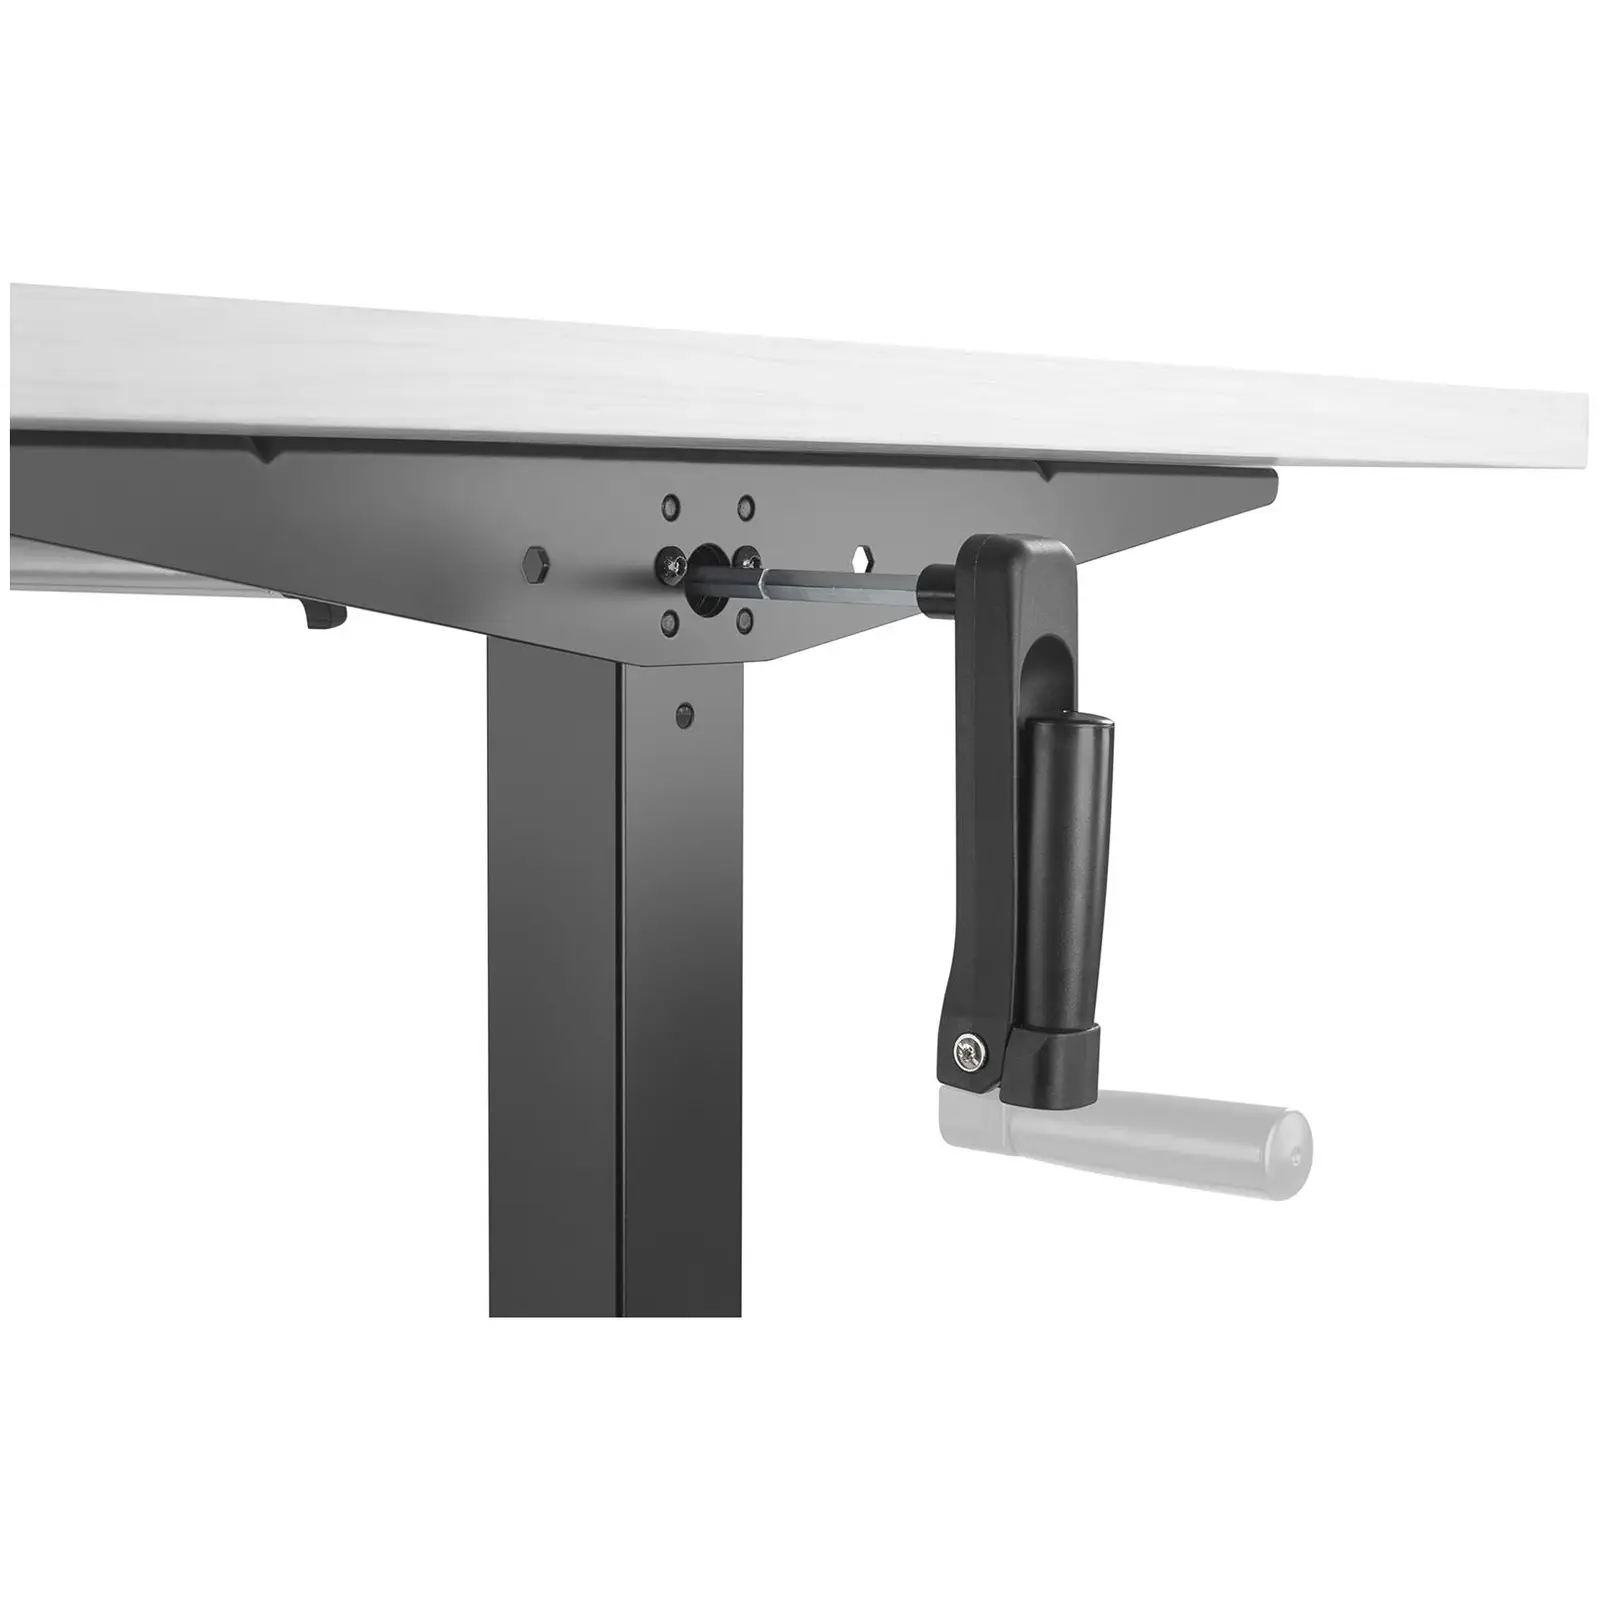 Sit-Stand Desk Frame STAR_DESK_24 - manual - 70 kg - black